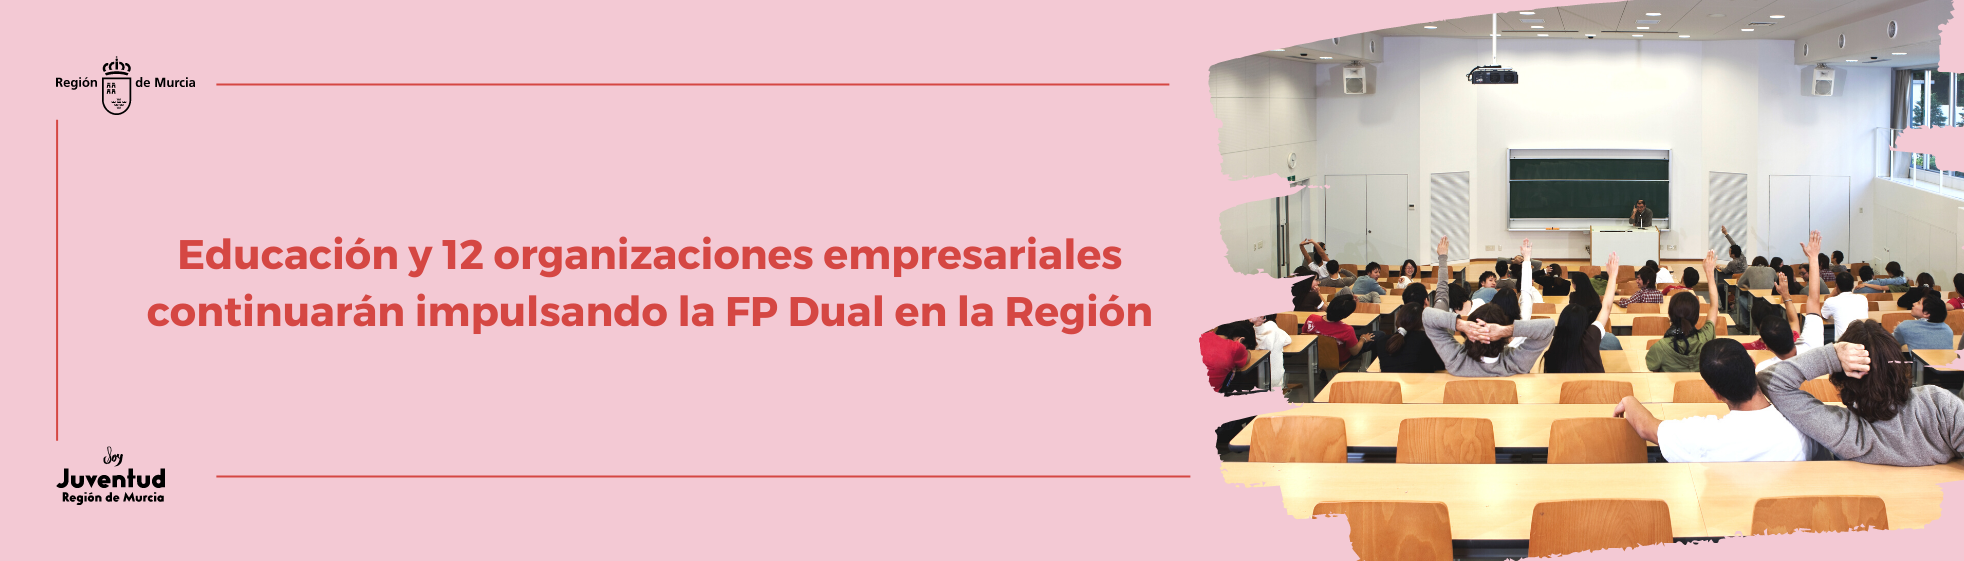 Educación y 12 organizaciones empresariales continuarán impulsando la FP Dual en la Región